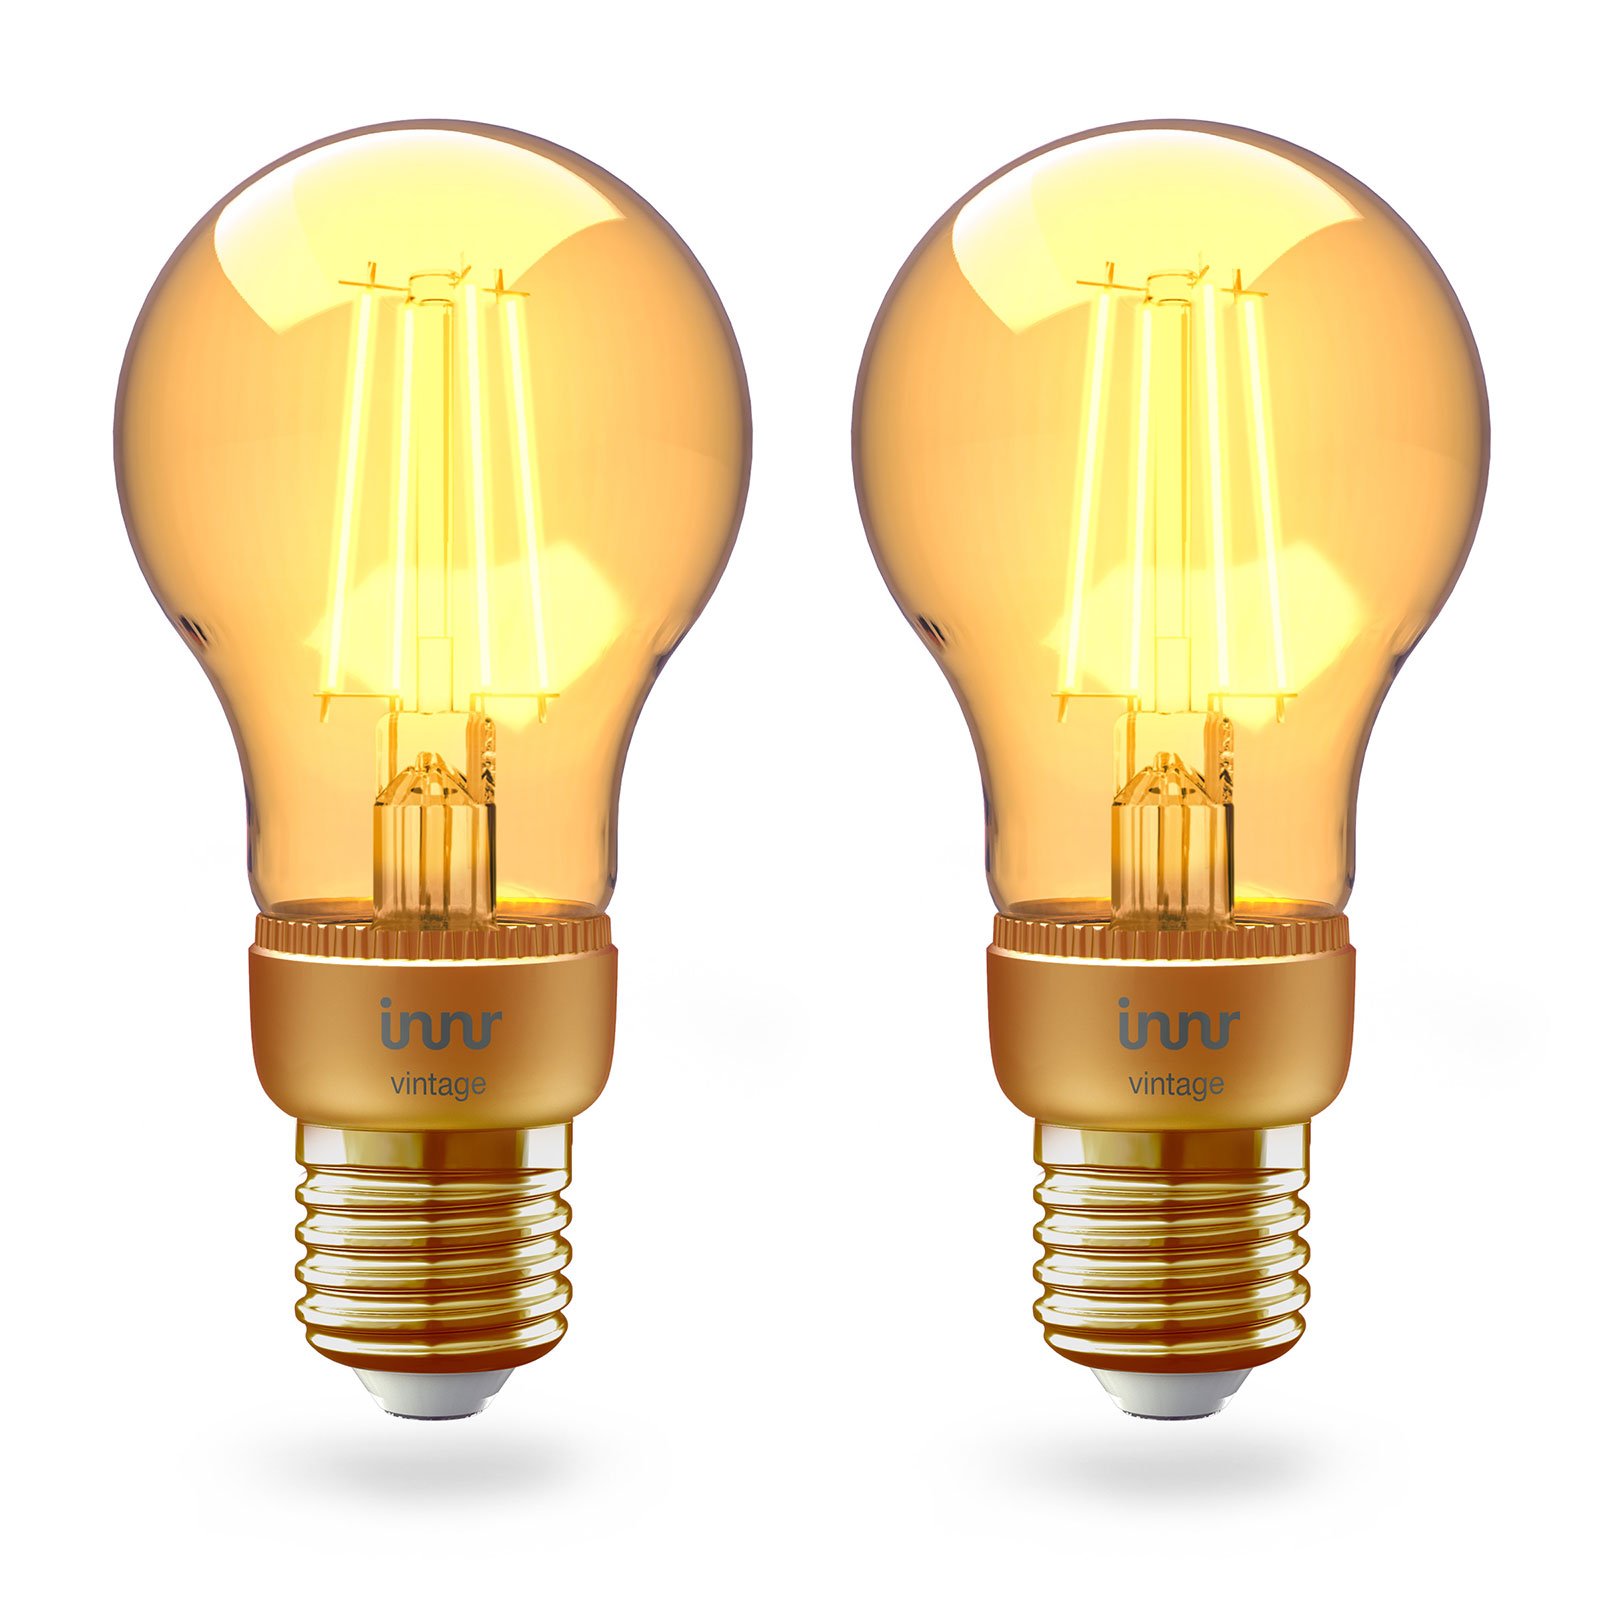 Innr 2 ampoules LED E27 4,2W Smart filament doré